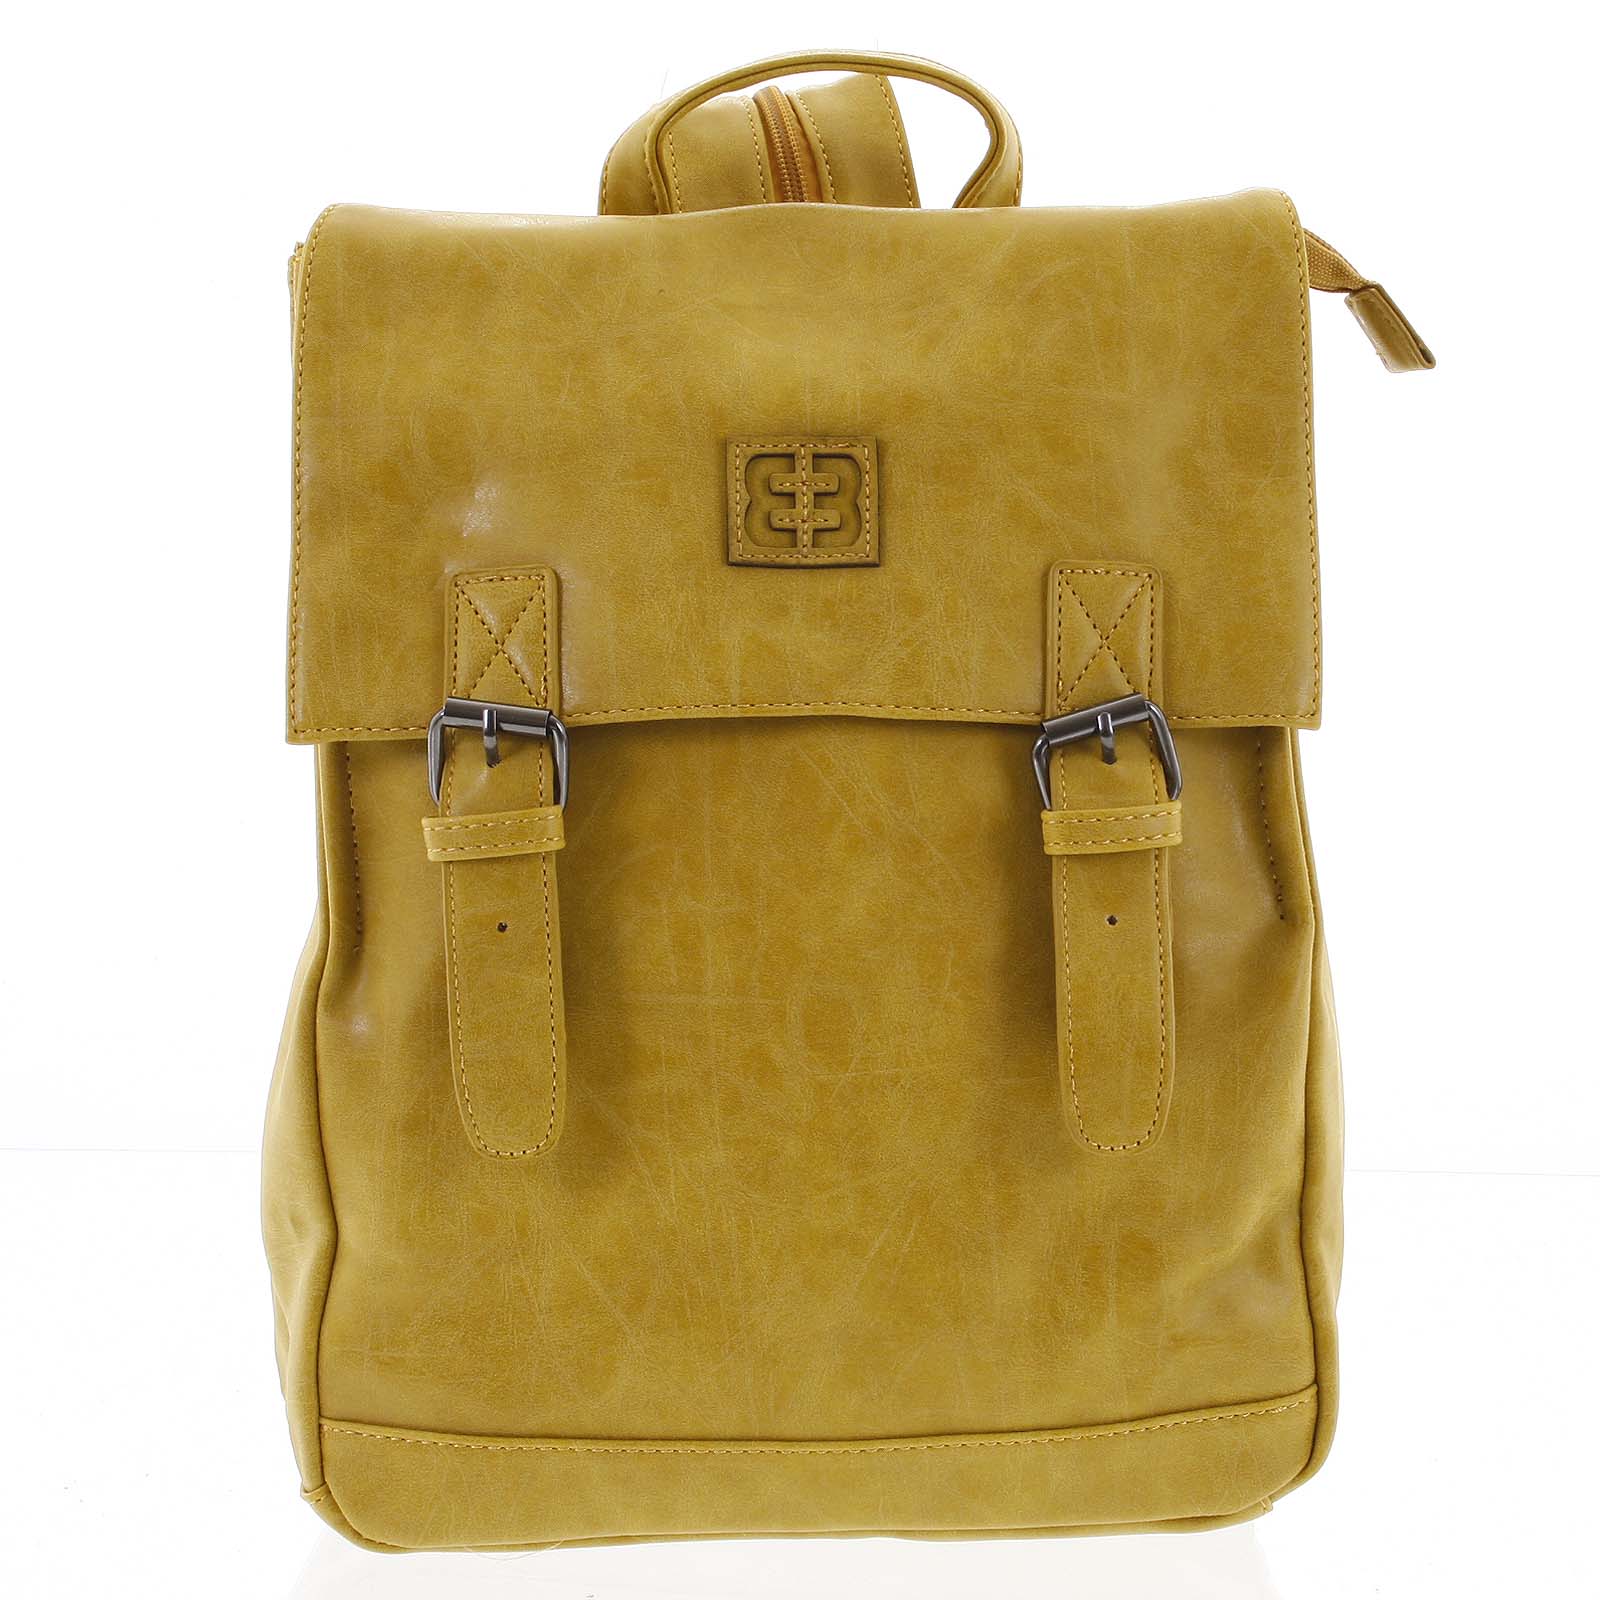 Módní stylový střední batoh okrově žlutý - Enrico Benetti Traverz  